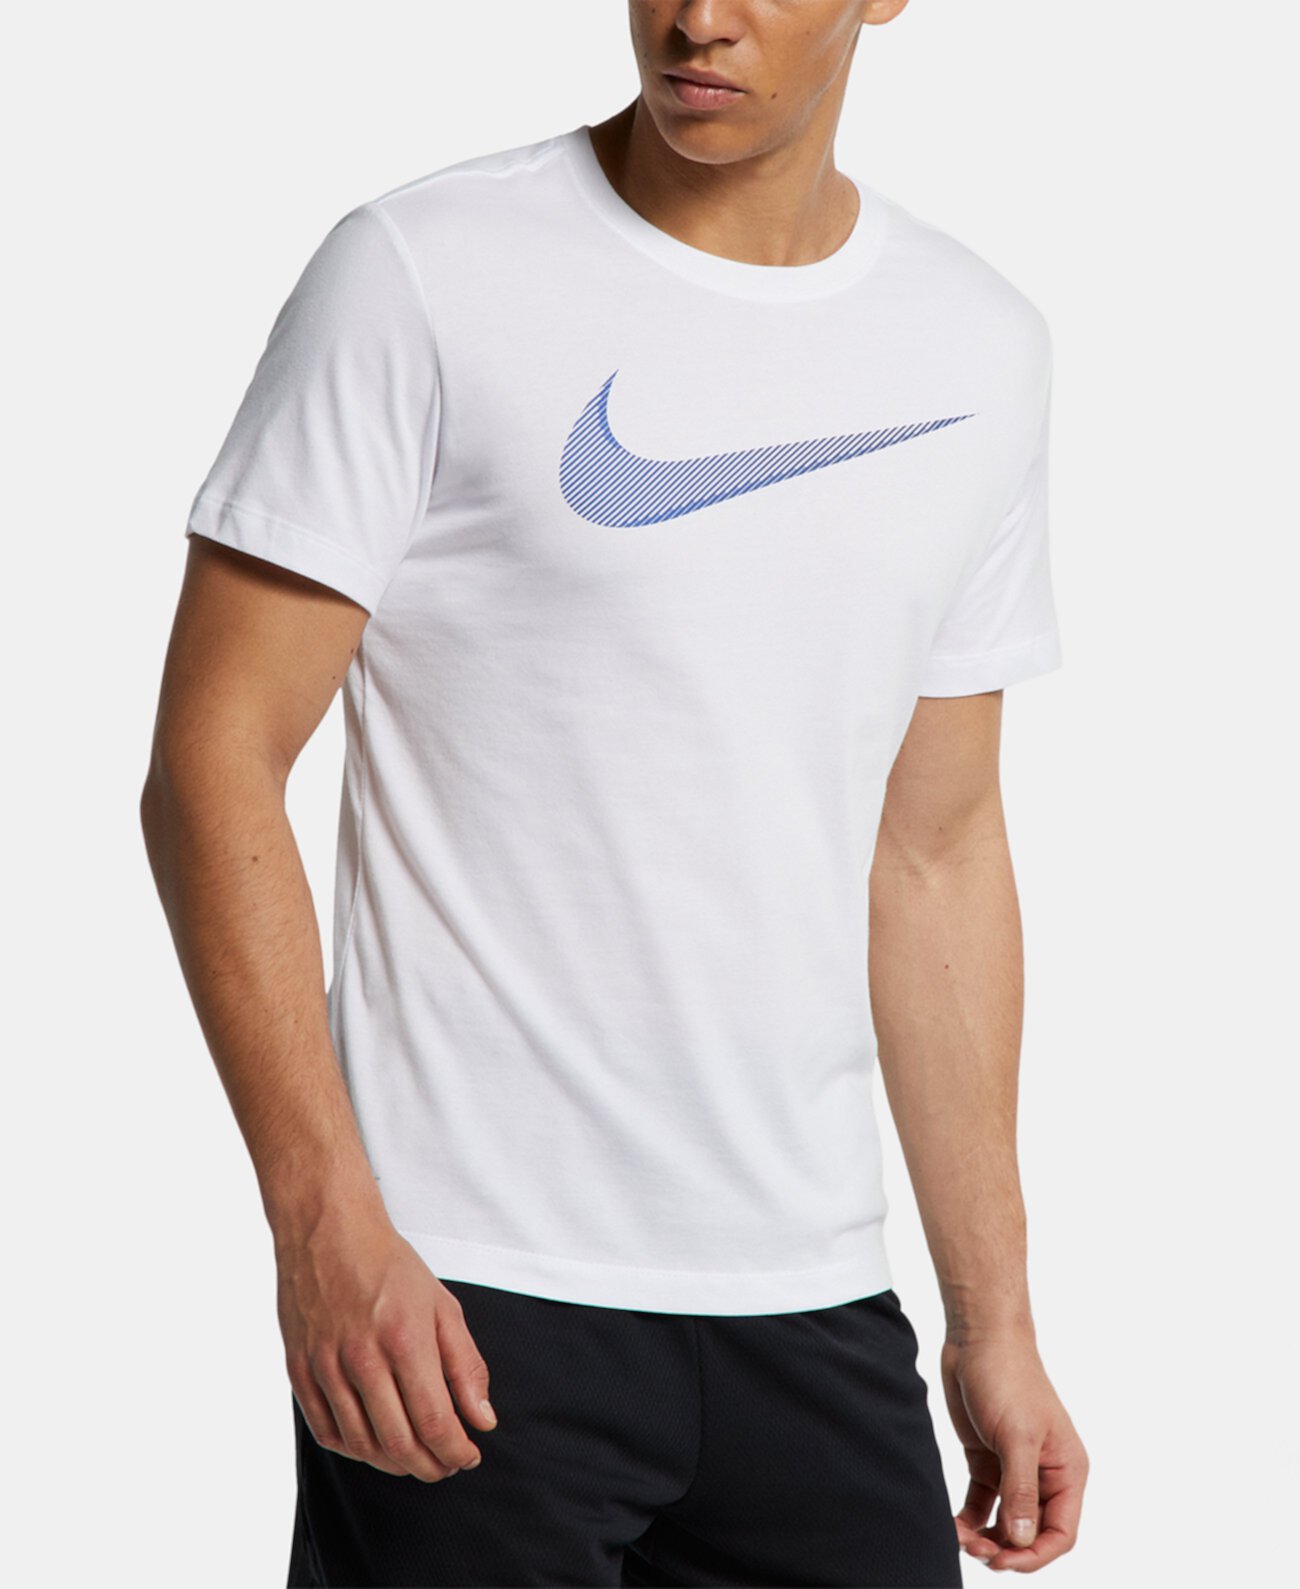 Топ для мужчин с логотипом Dri-FIT Nike